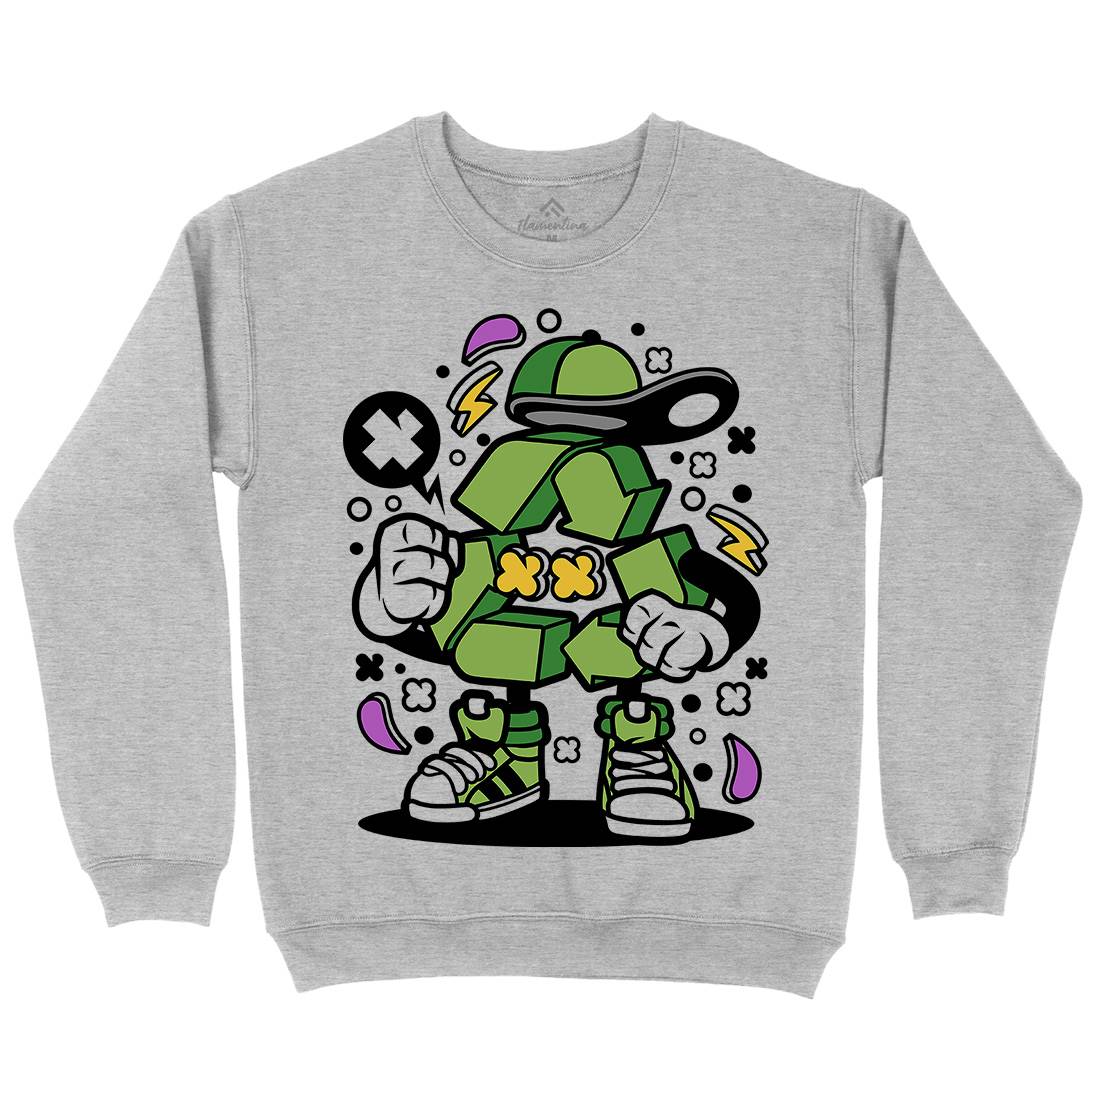 Recycle Kids Crew Neck Sweatshirt Retro C628